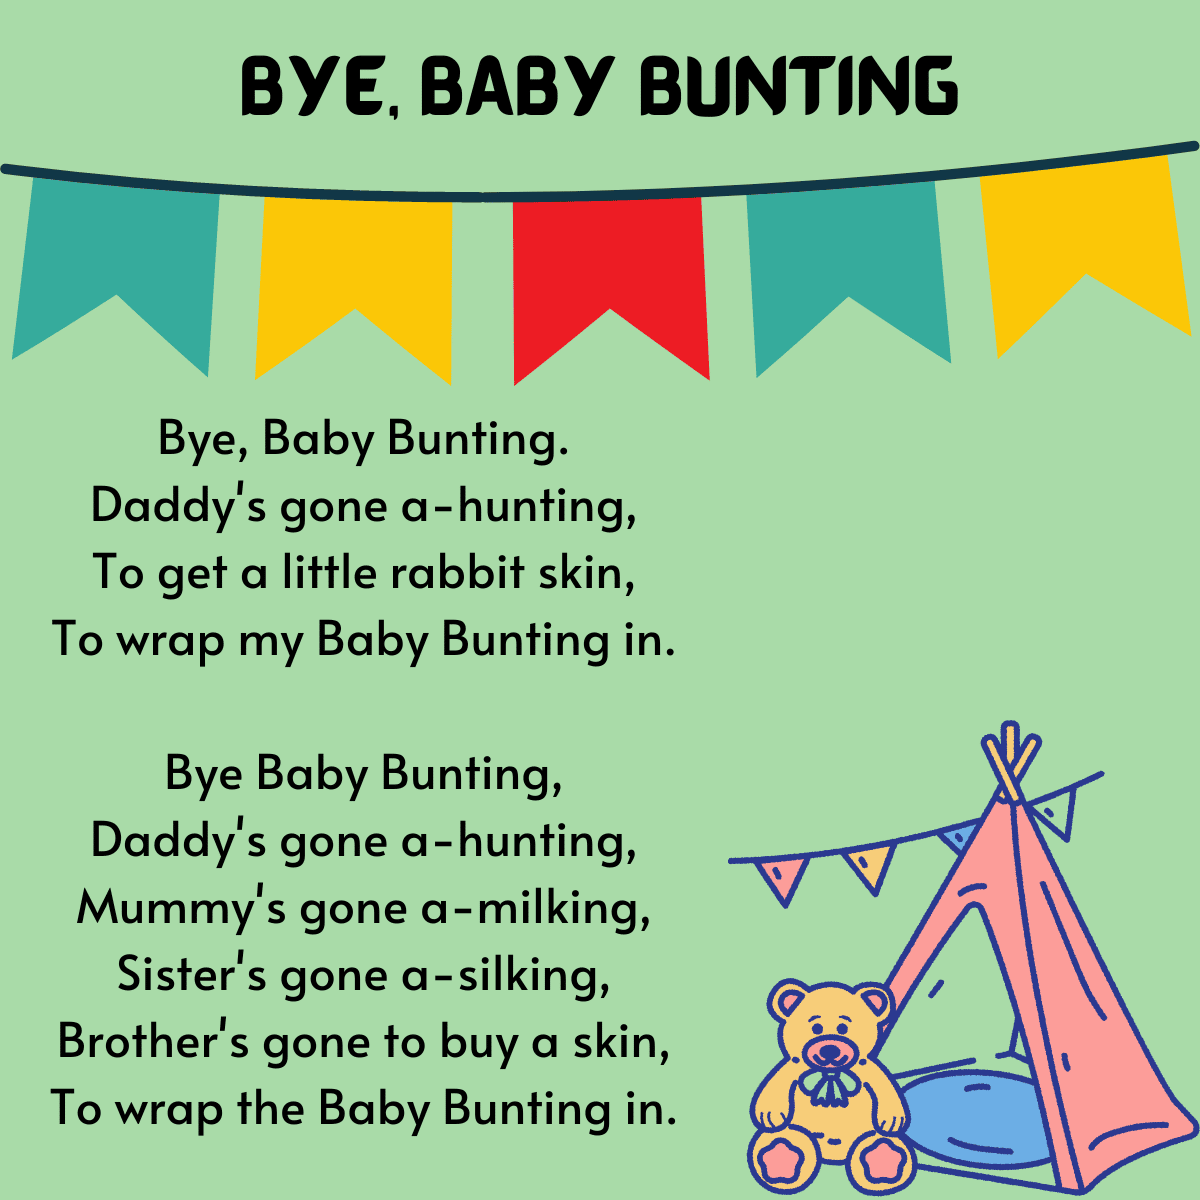 Bye, Baby Bunting lyrics